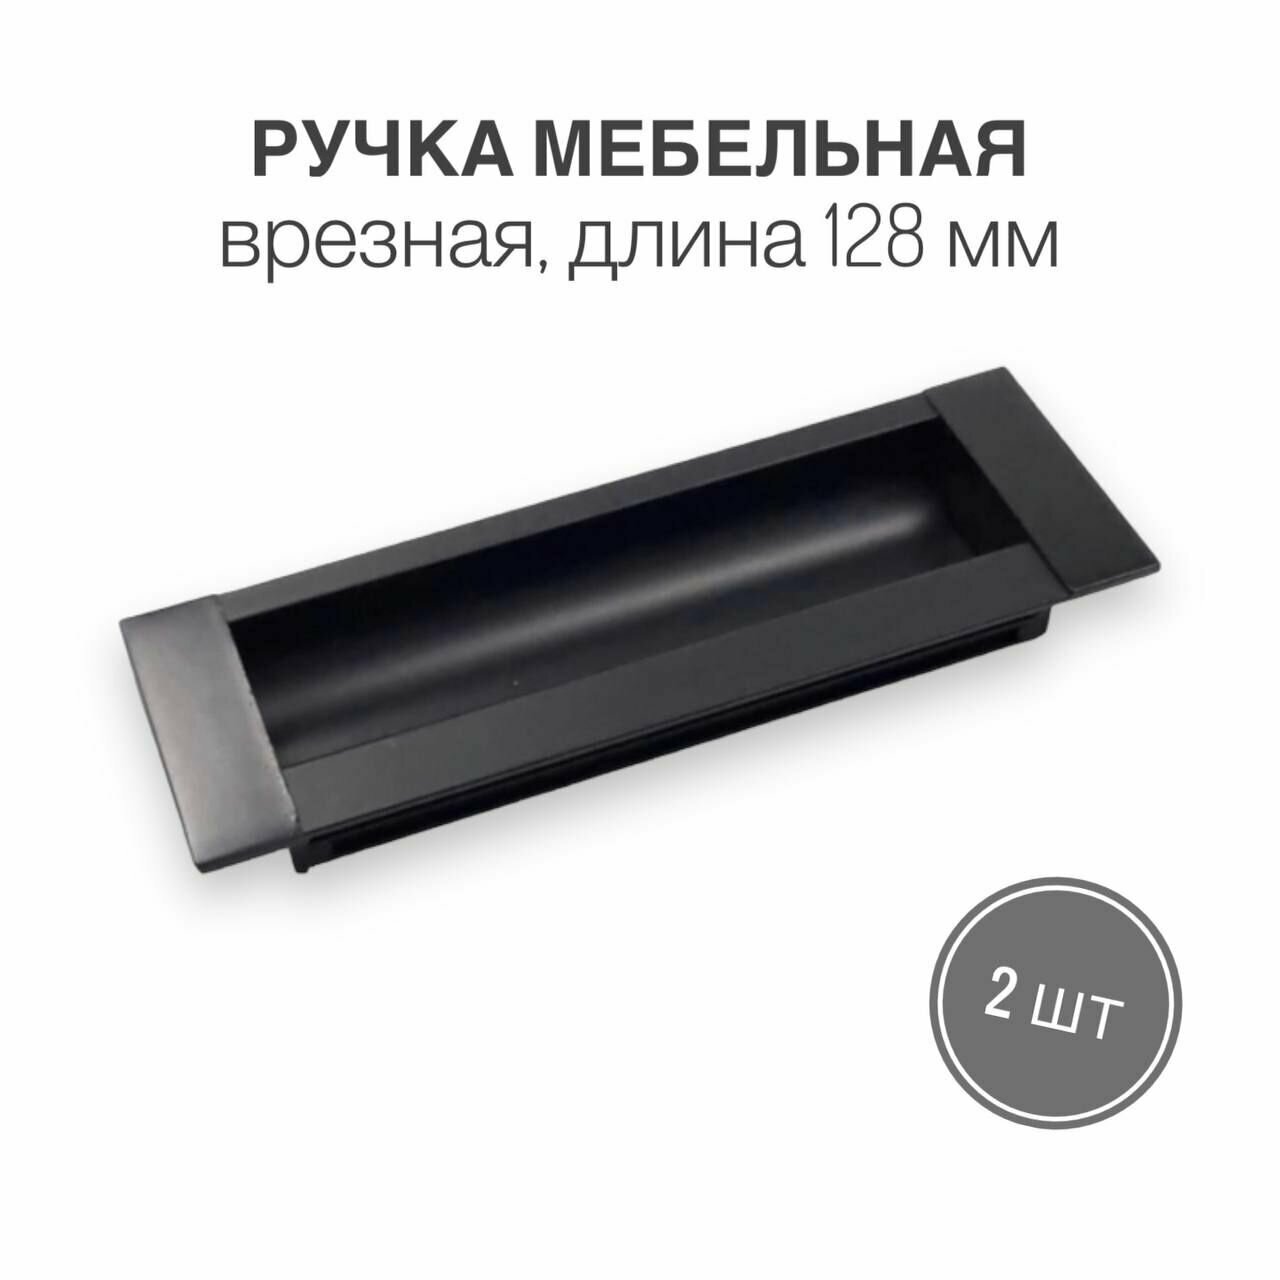 Ручка мебельная врезная, для корпусной и мягкой мебели, цвет черный матовый, длина 128 мм, 2 шт